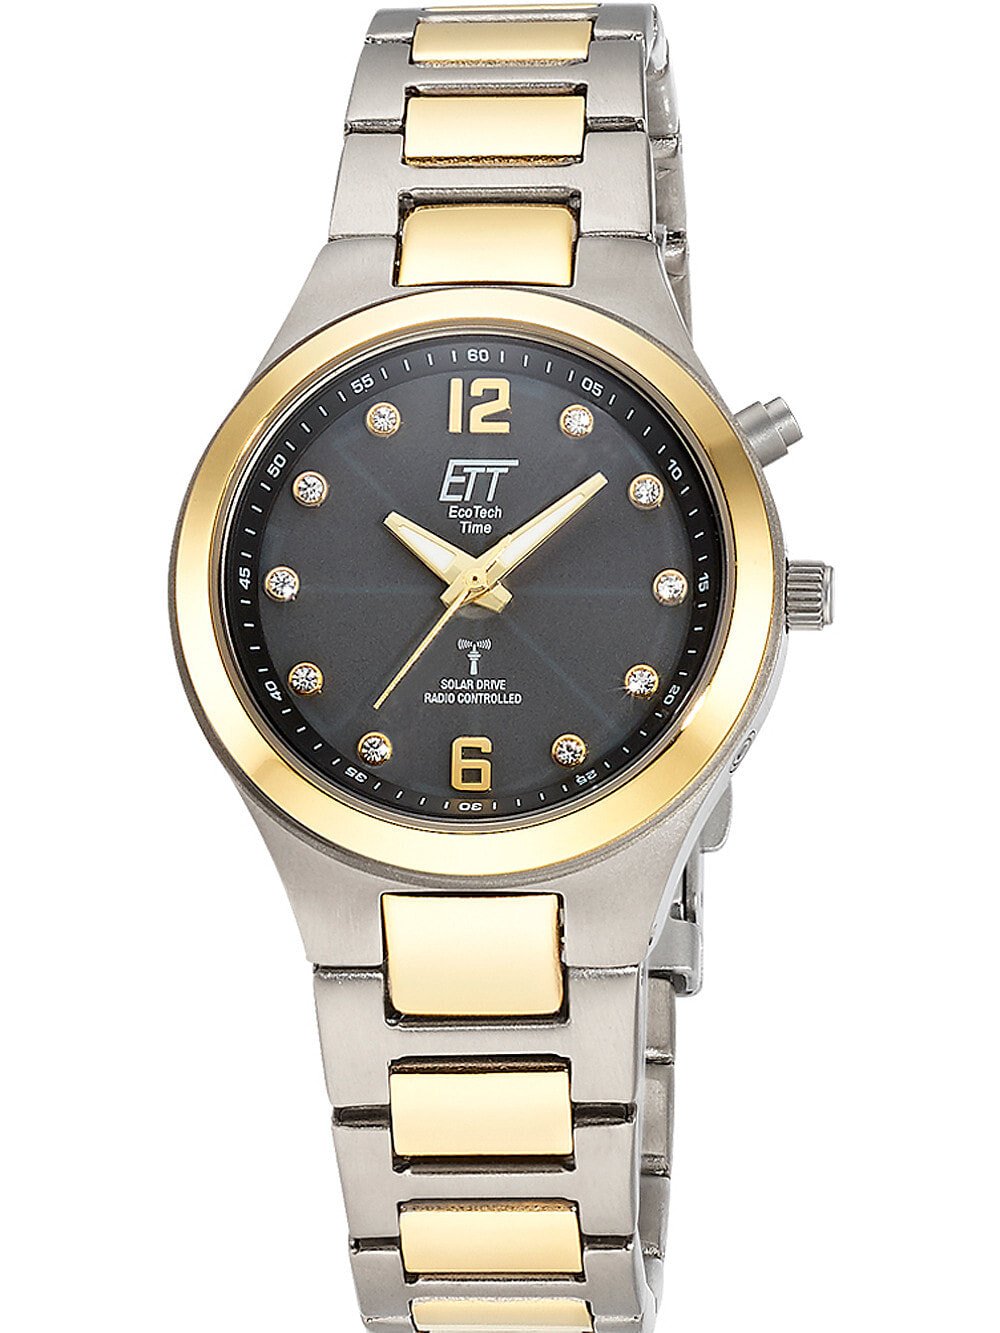 Женские наручные кварцевые часы  ETT Eco Tech Time  титановый ремешок. Водонепроницаемость-5 АТМ. Прочное, минеральное стекло. Циферблат декорированы цирконием.